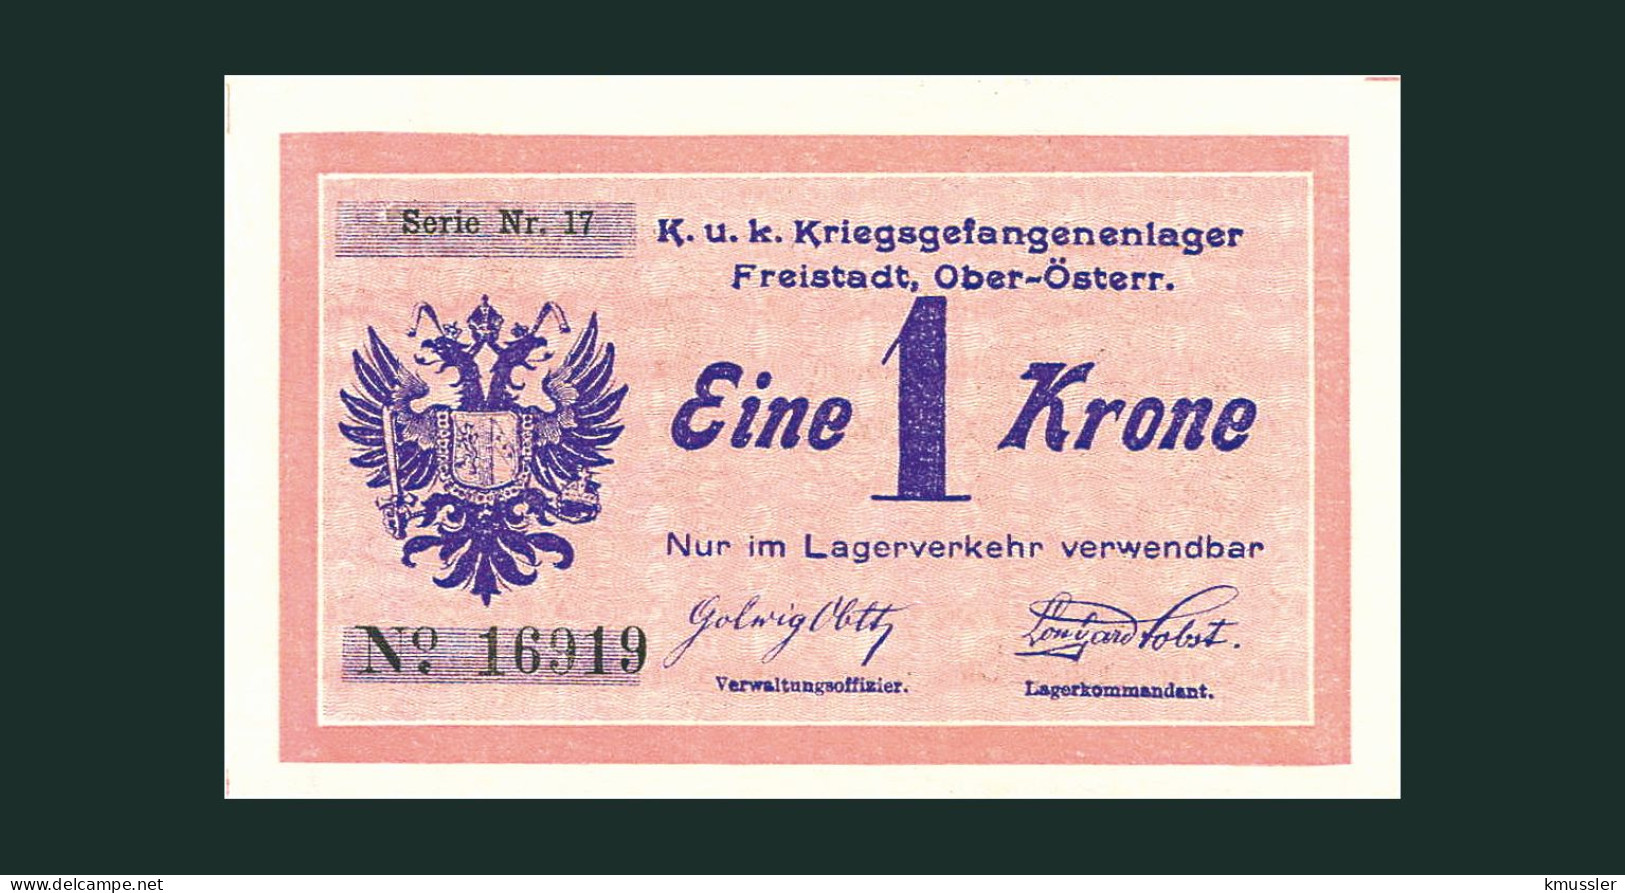 # # # Banknote Kriegsgefangenenlager Freistadt (POW-Camp) 1 Krone # # # - Austria